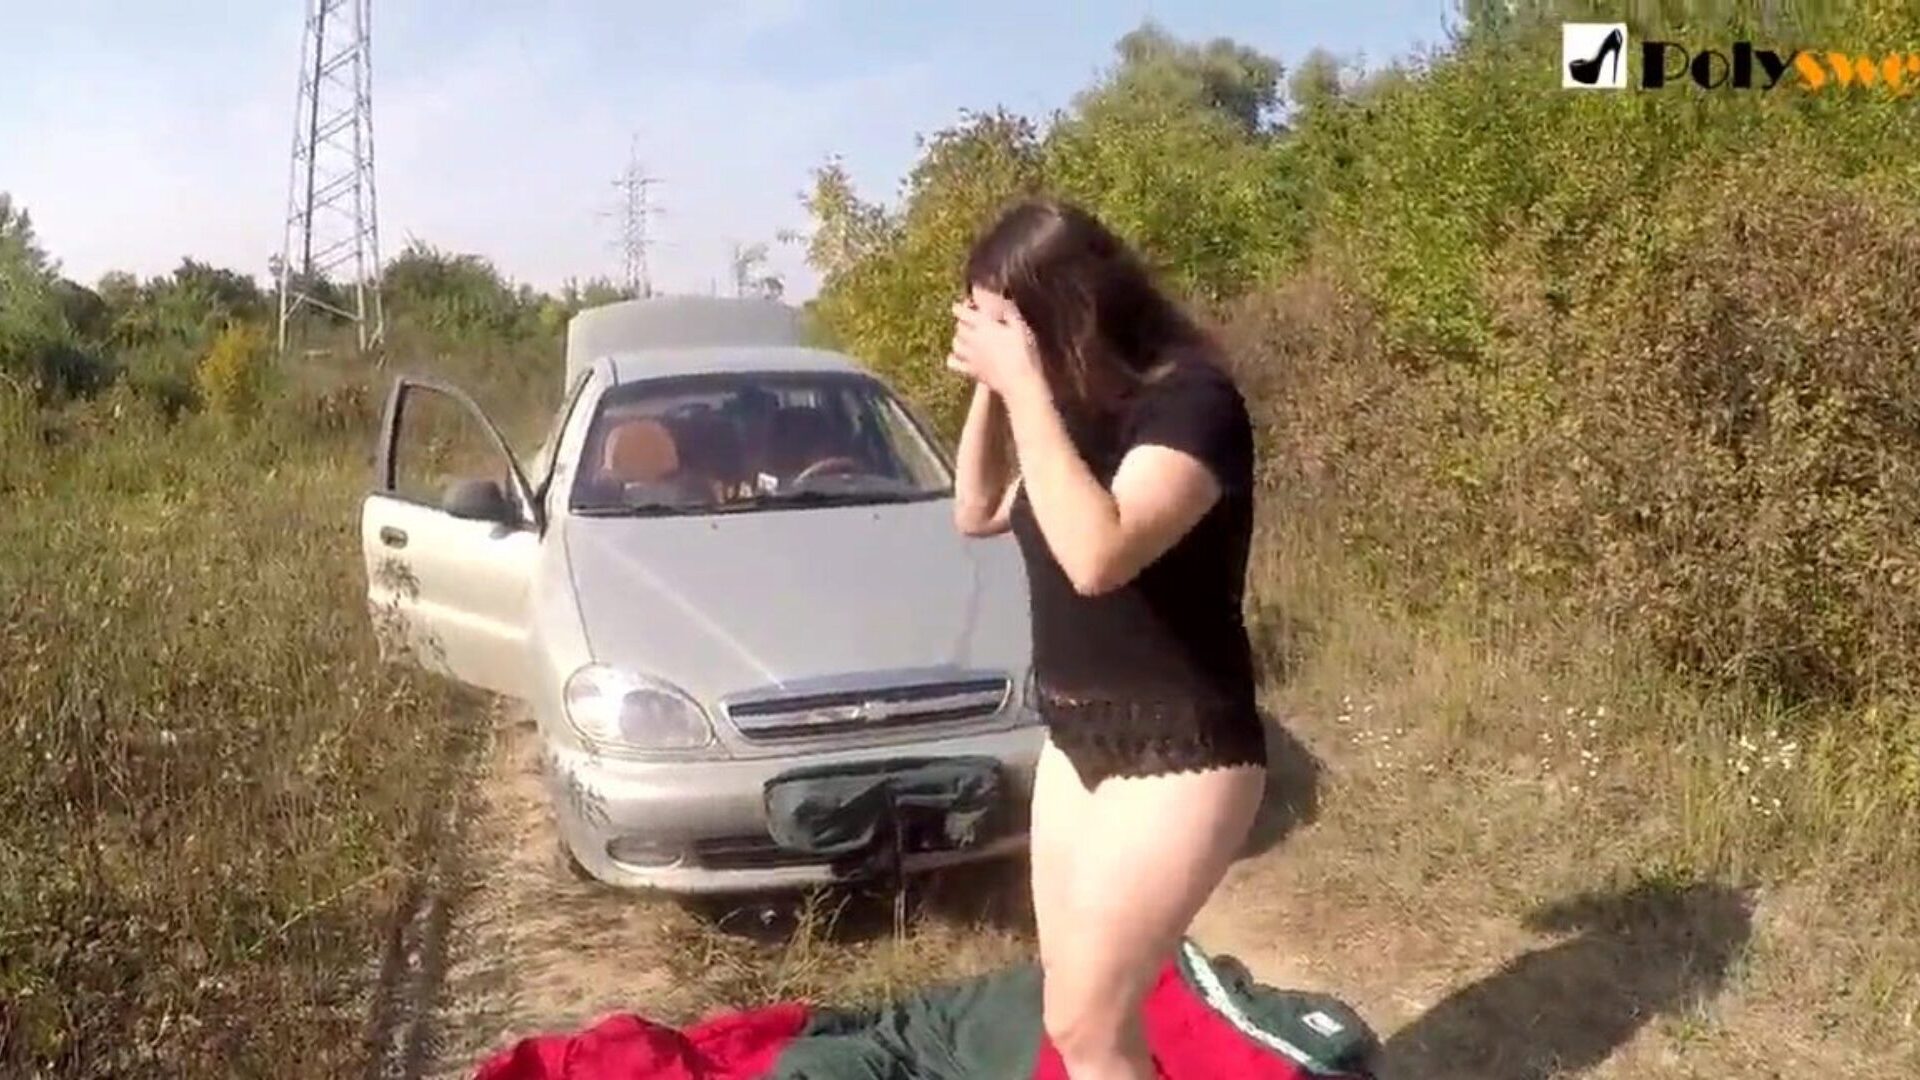 openbaar masturbatie meisje ik werd betrapt door een auto in het begin van de video)